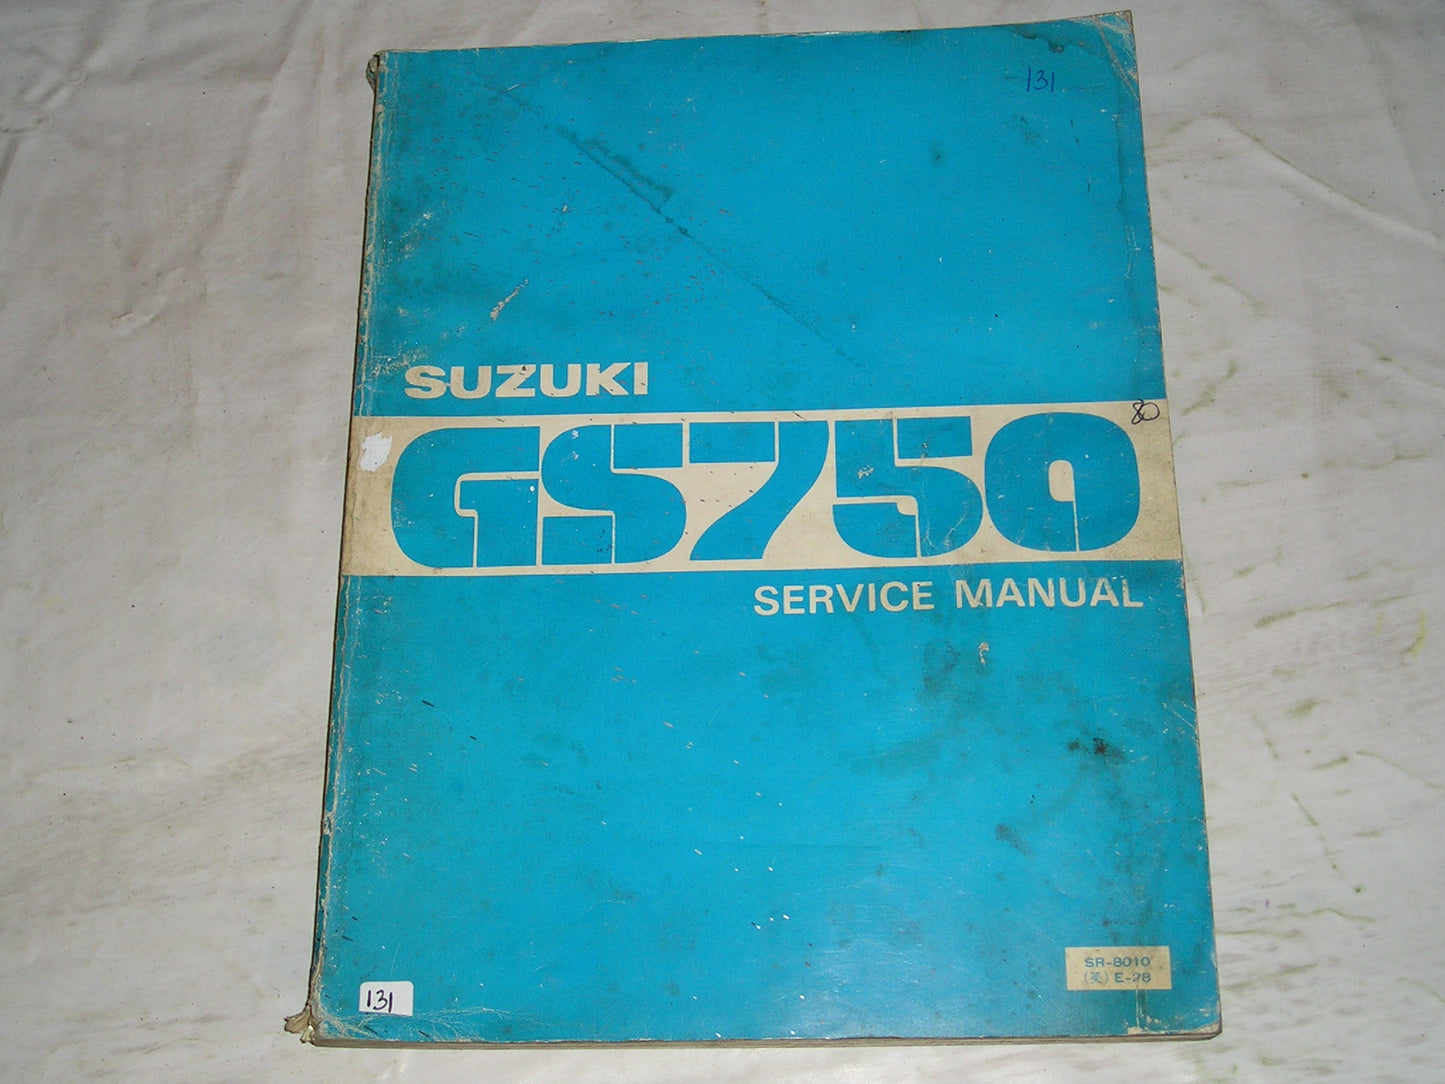 SUZUKI GS750 1980  Service Manual  SR-8010 E-28  #131